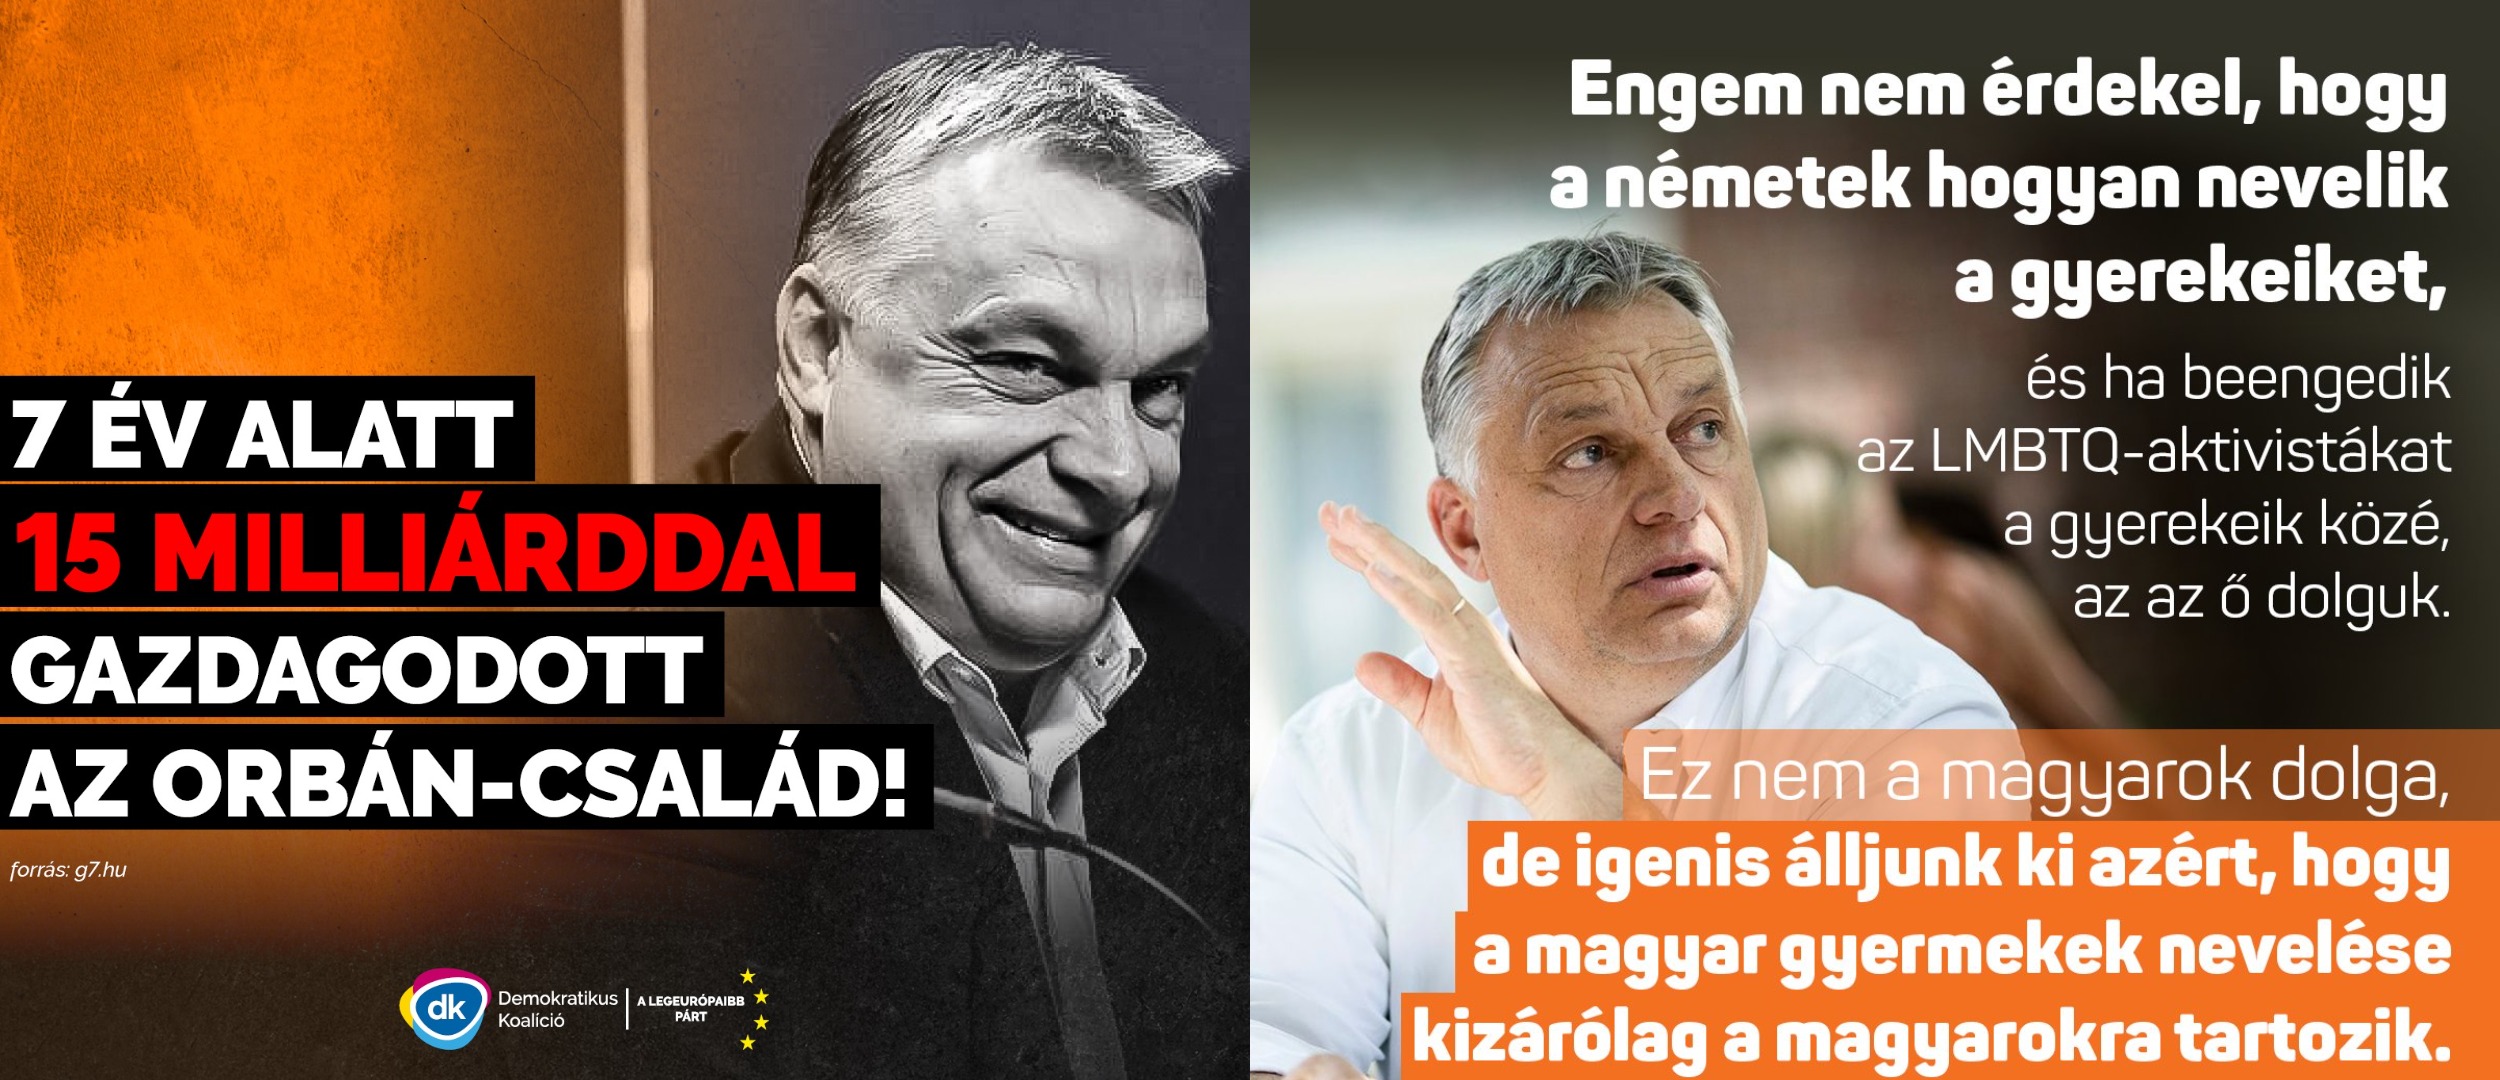 Orbán: az ártatlan angyal és a kárörvendő ördög egy személyben. A magyar közélet két párhuzamos univerzumát ennél aligha lehetne jobban illusztrálni. 